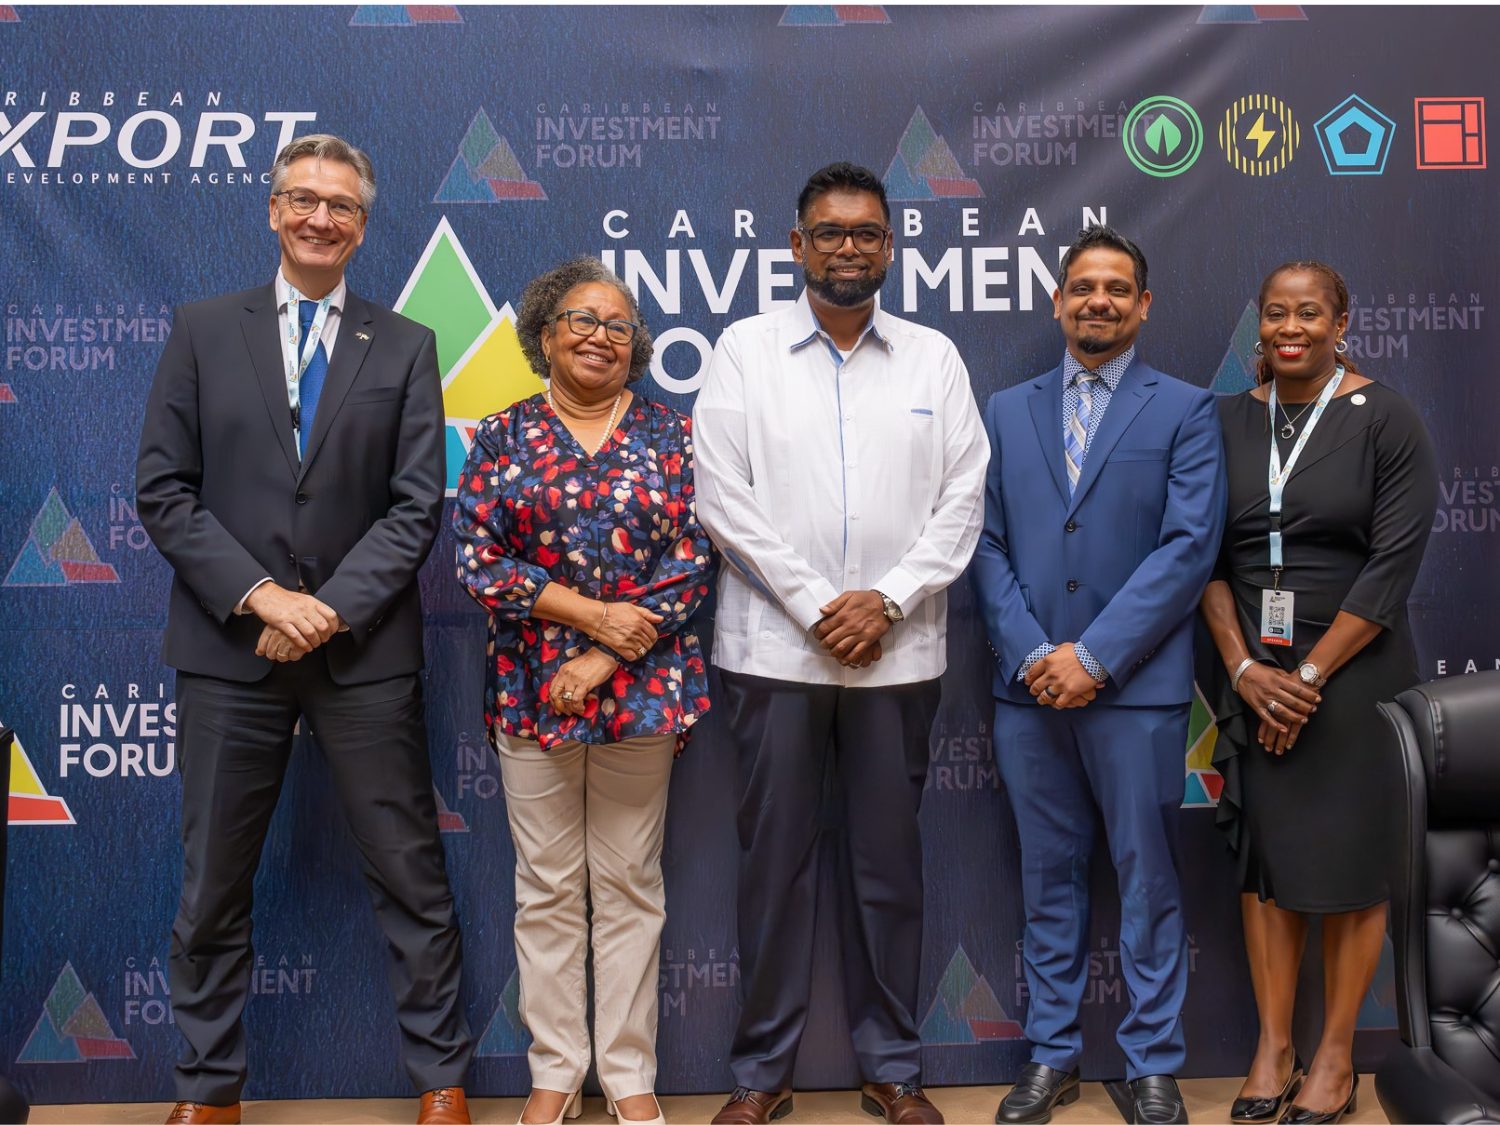 El Foro de Inversión del Caribe sigue creando oportunidades para aumentar la inversión en la Región.